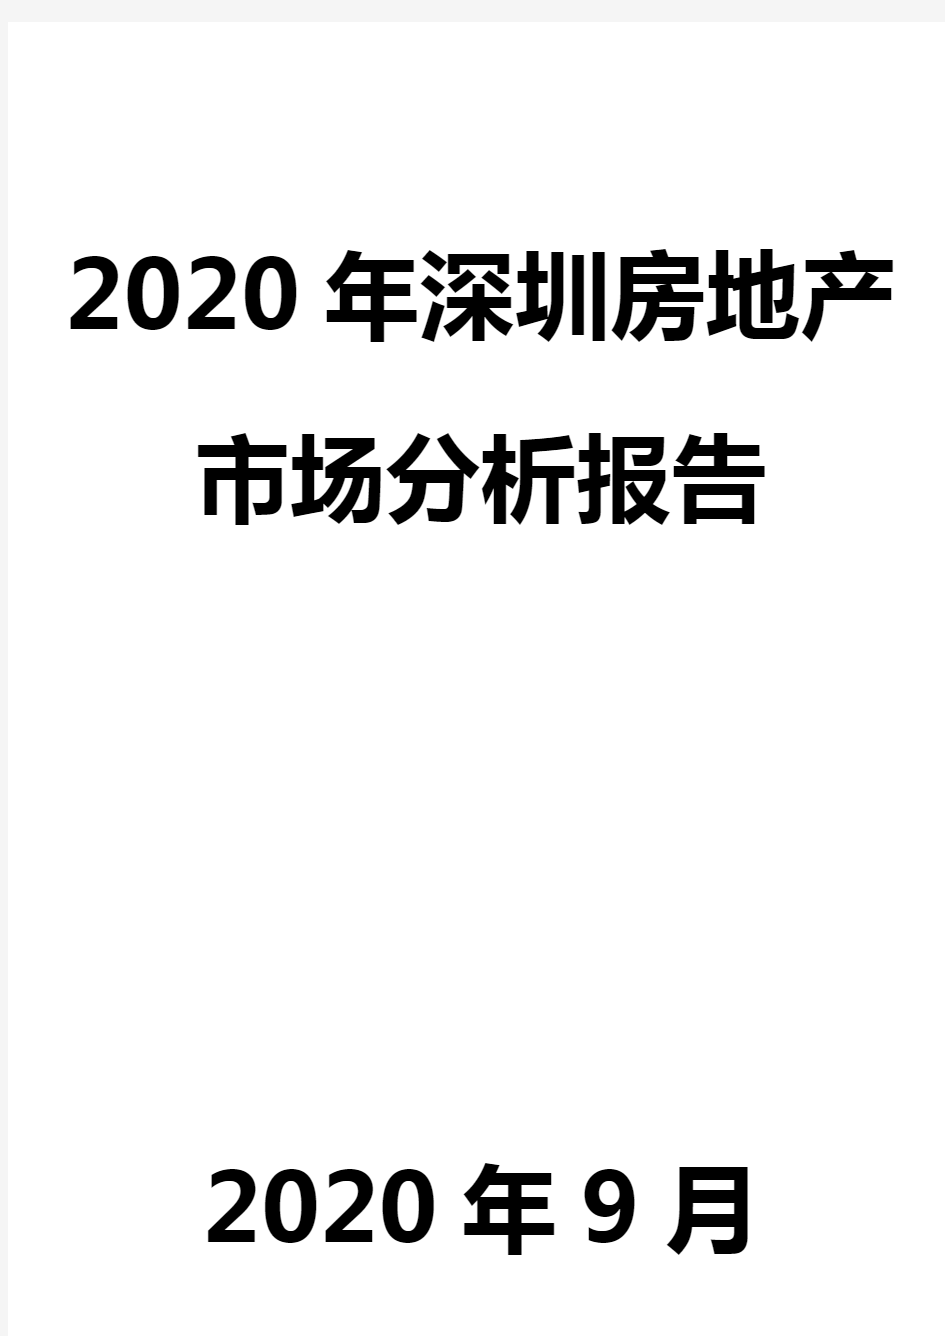 2020年深圳房地产市场分析报告